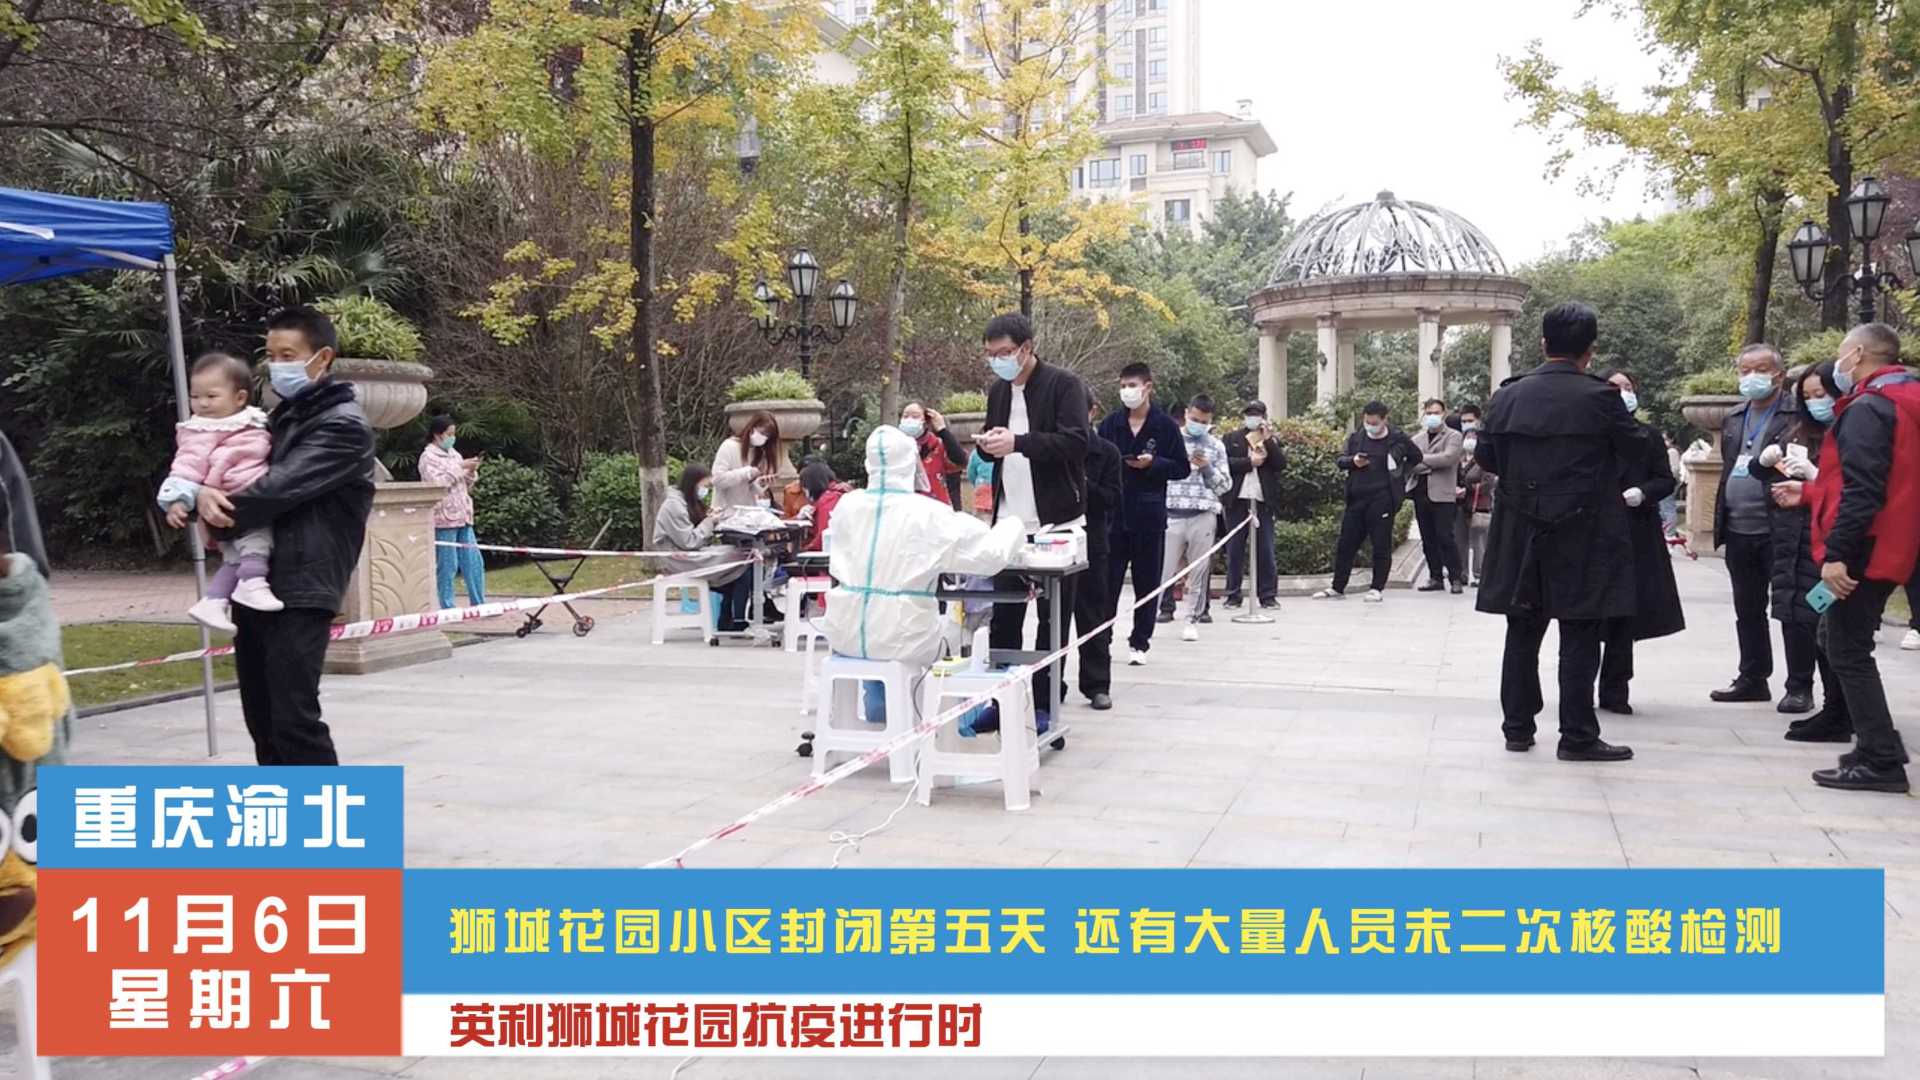 重庆渝北狮城花园封闭五天仍未解封 抗疫需要大家配合参与